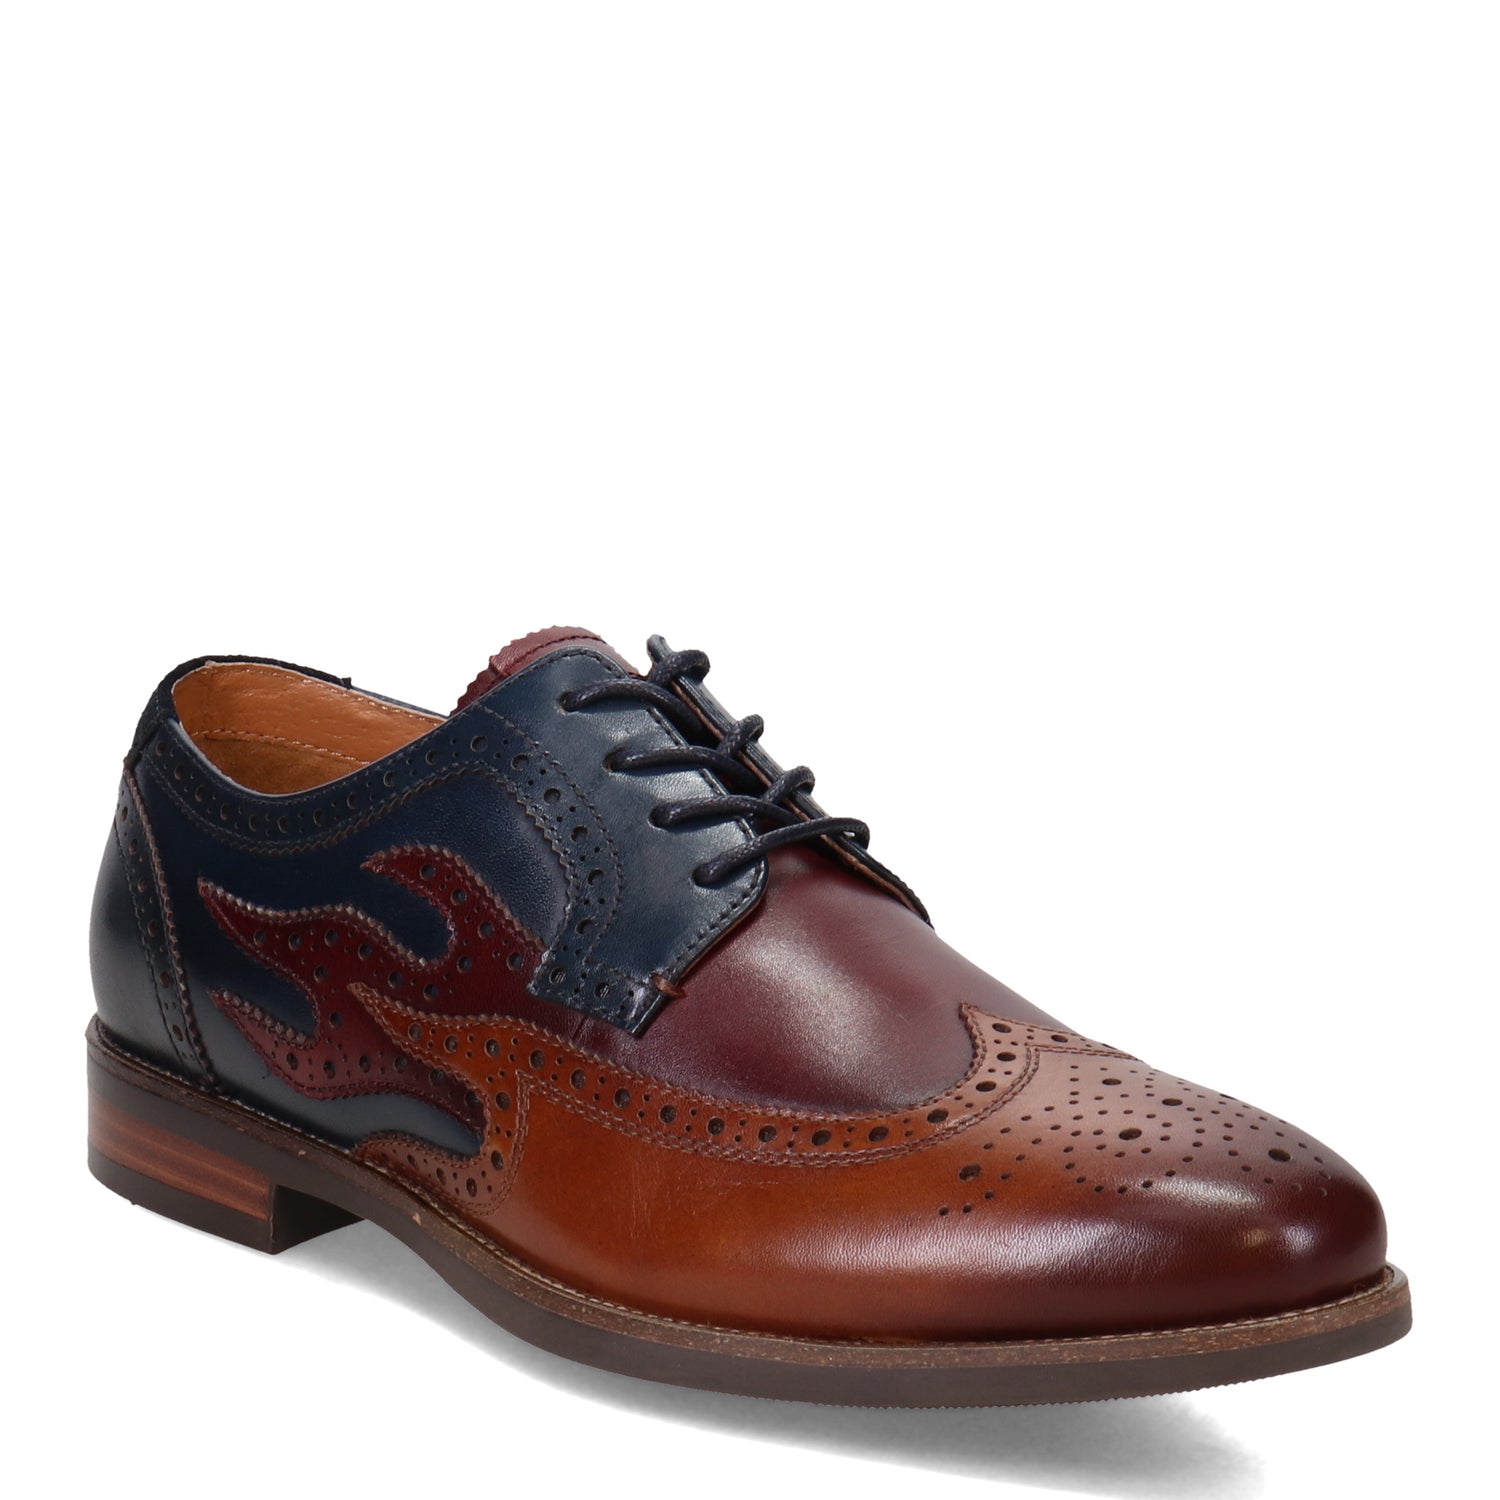 Peltz Shoes  Men's Florsheim Uptown Spicy Wingtip Oxford COGNAC NAVY 15197-229